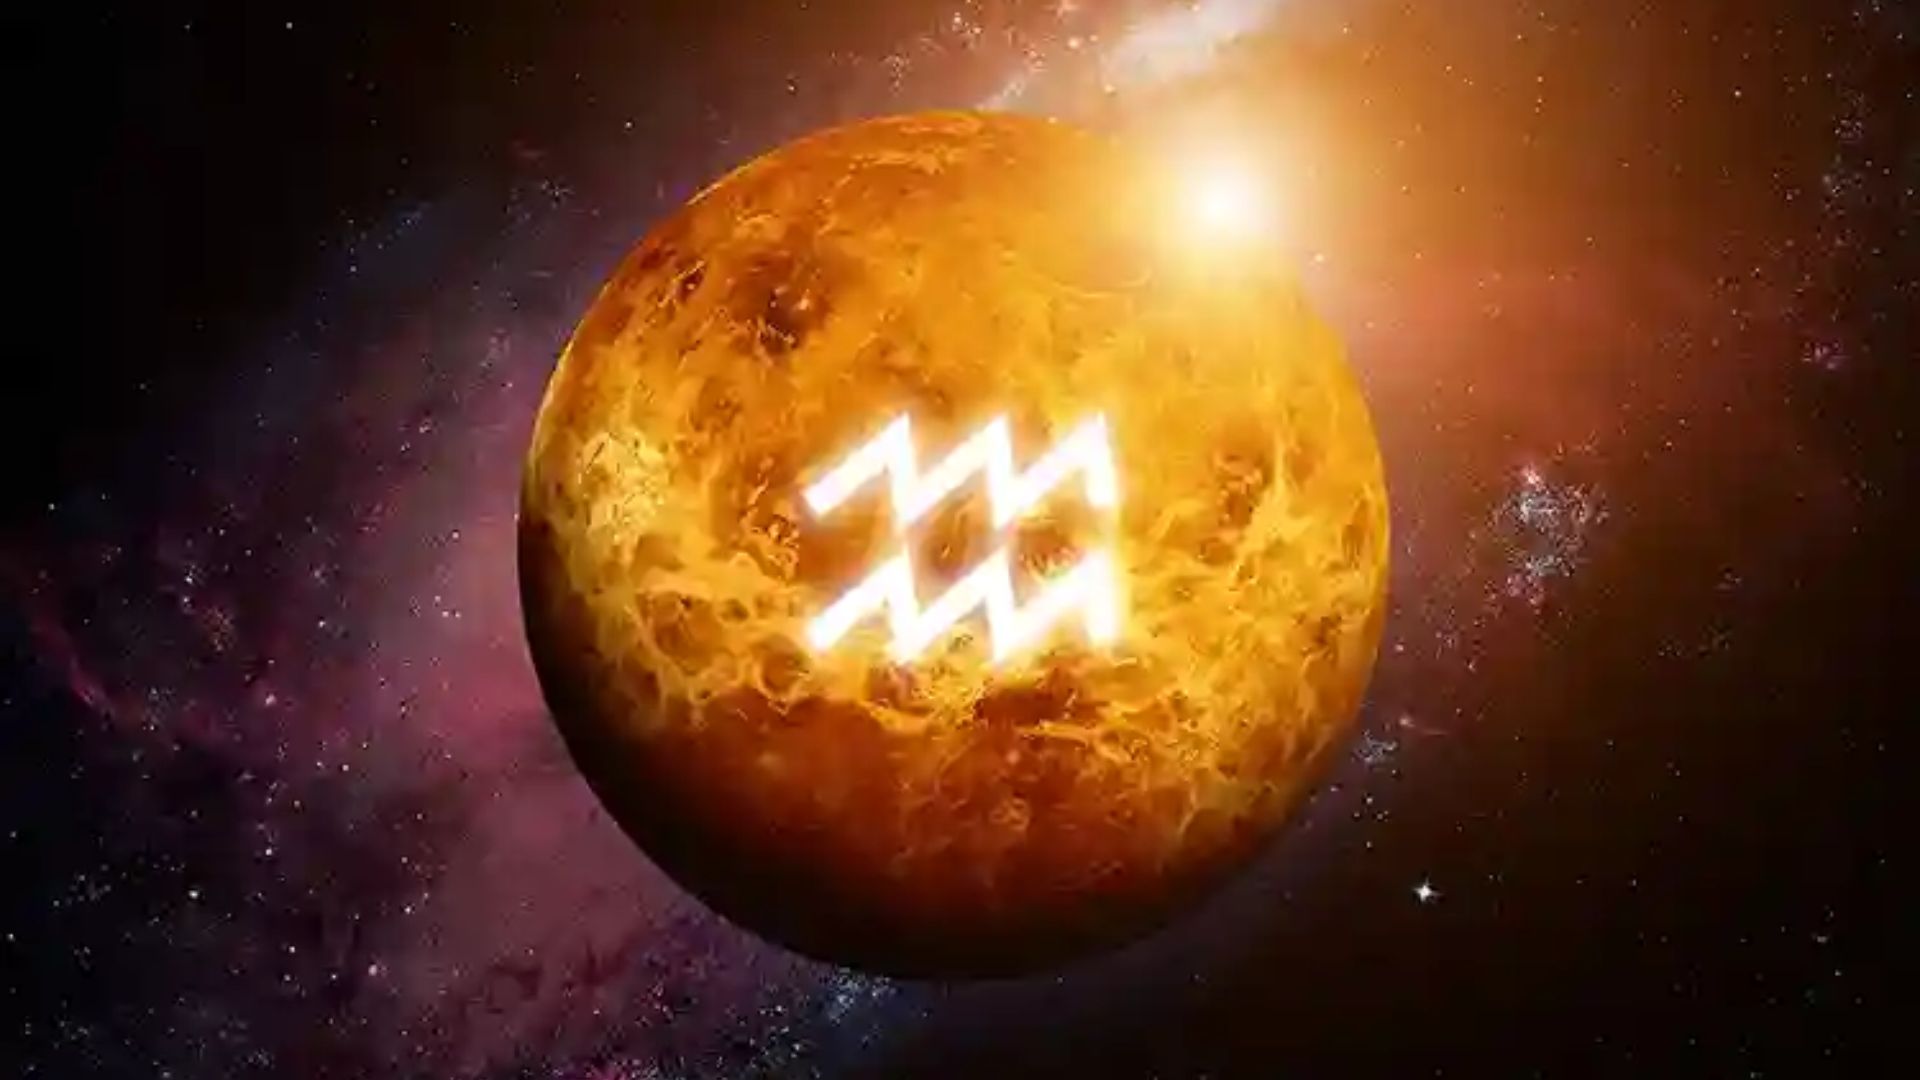 Aquarius Sign On Venus